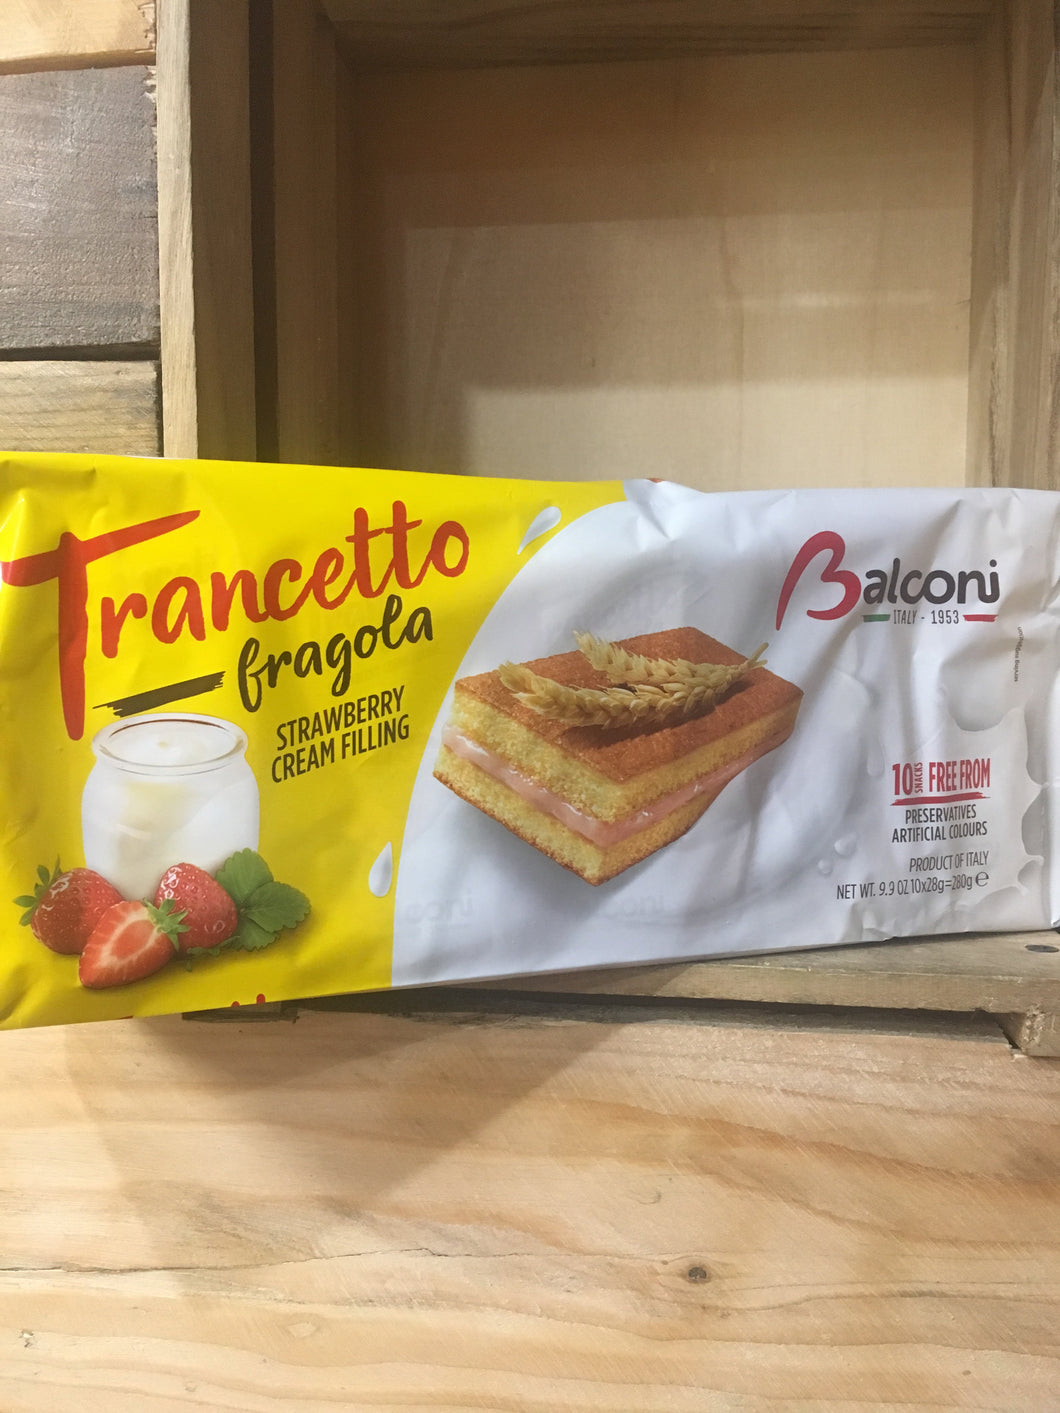 Balconi Trancetto Fragola Strawberry Cream Filling 10 Mini Cakes 280g